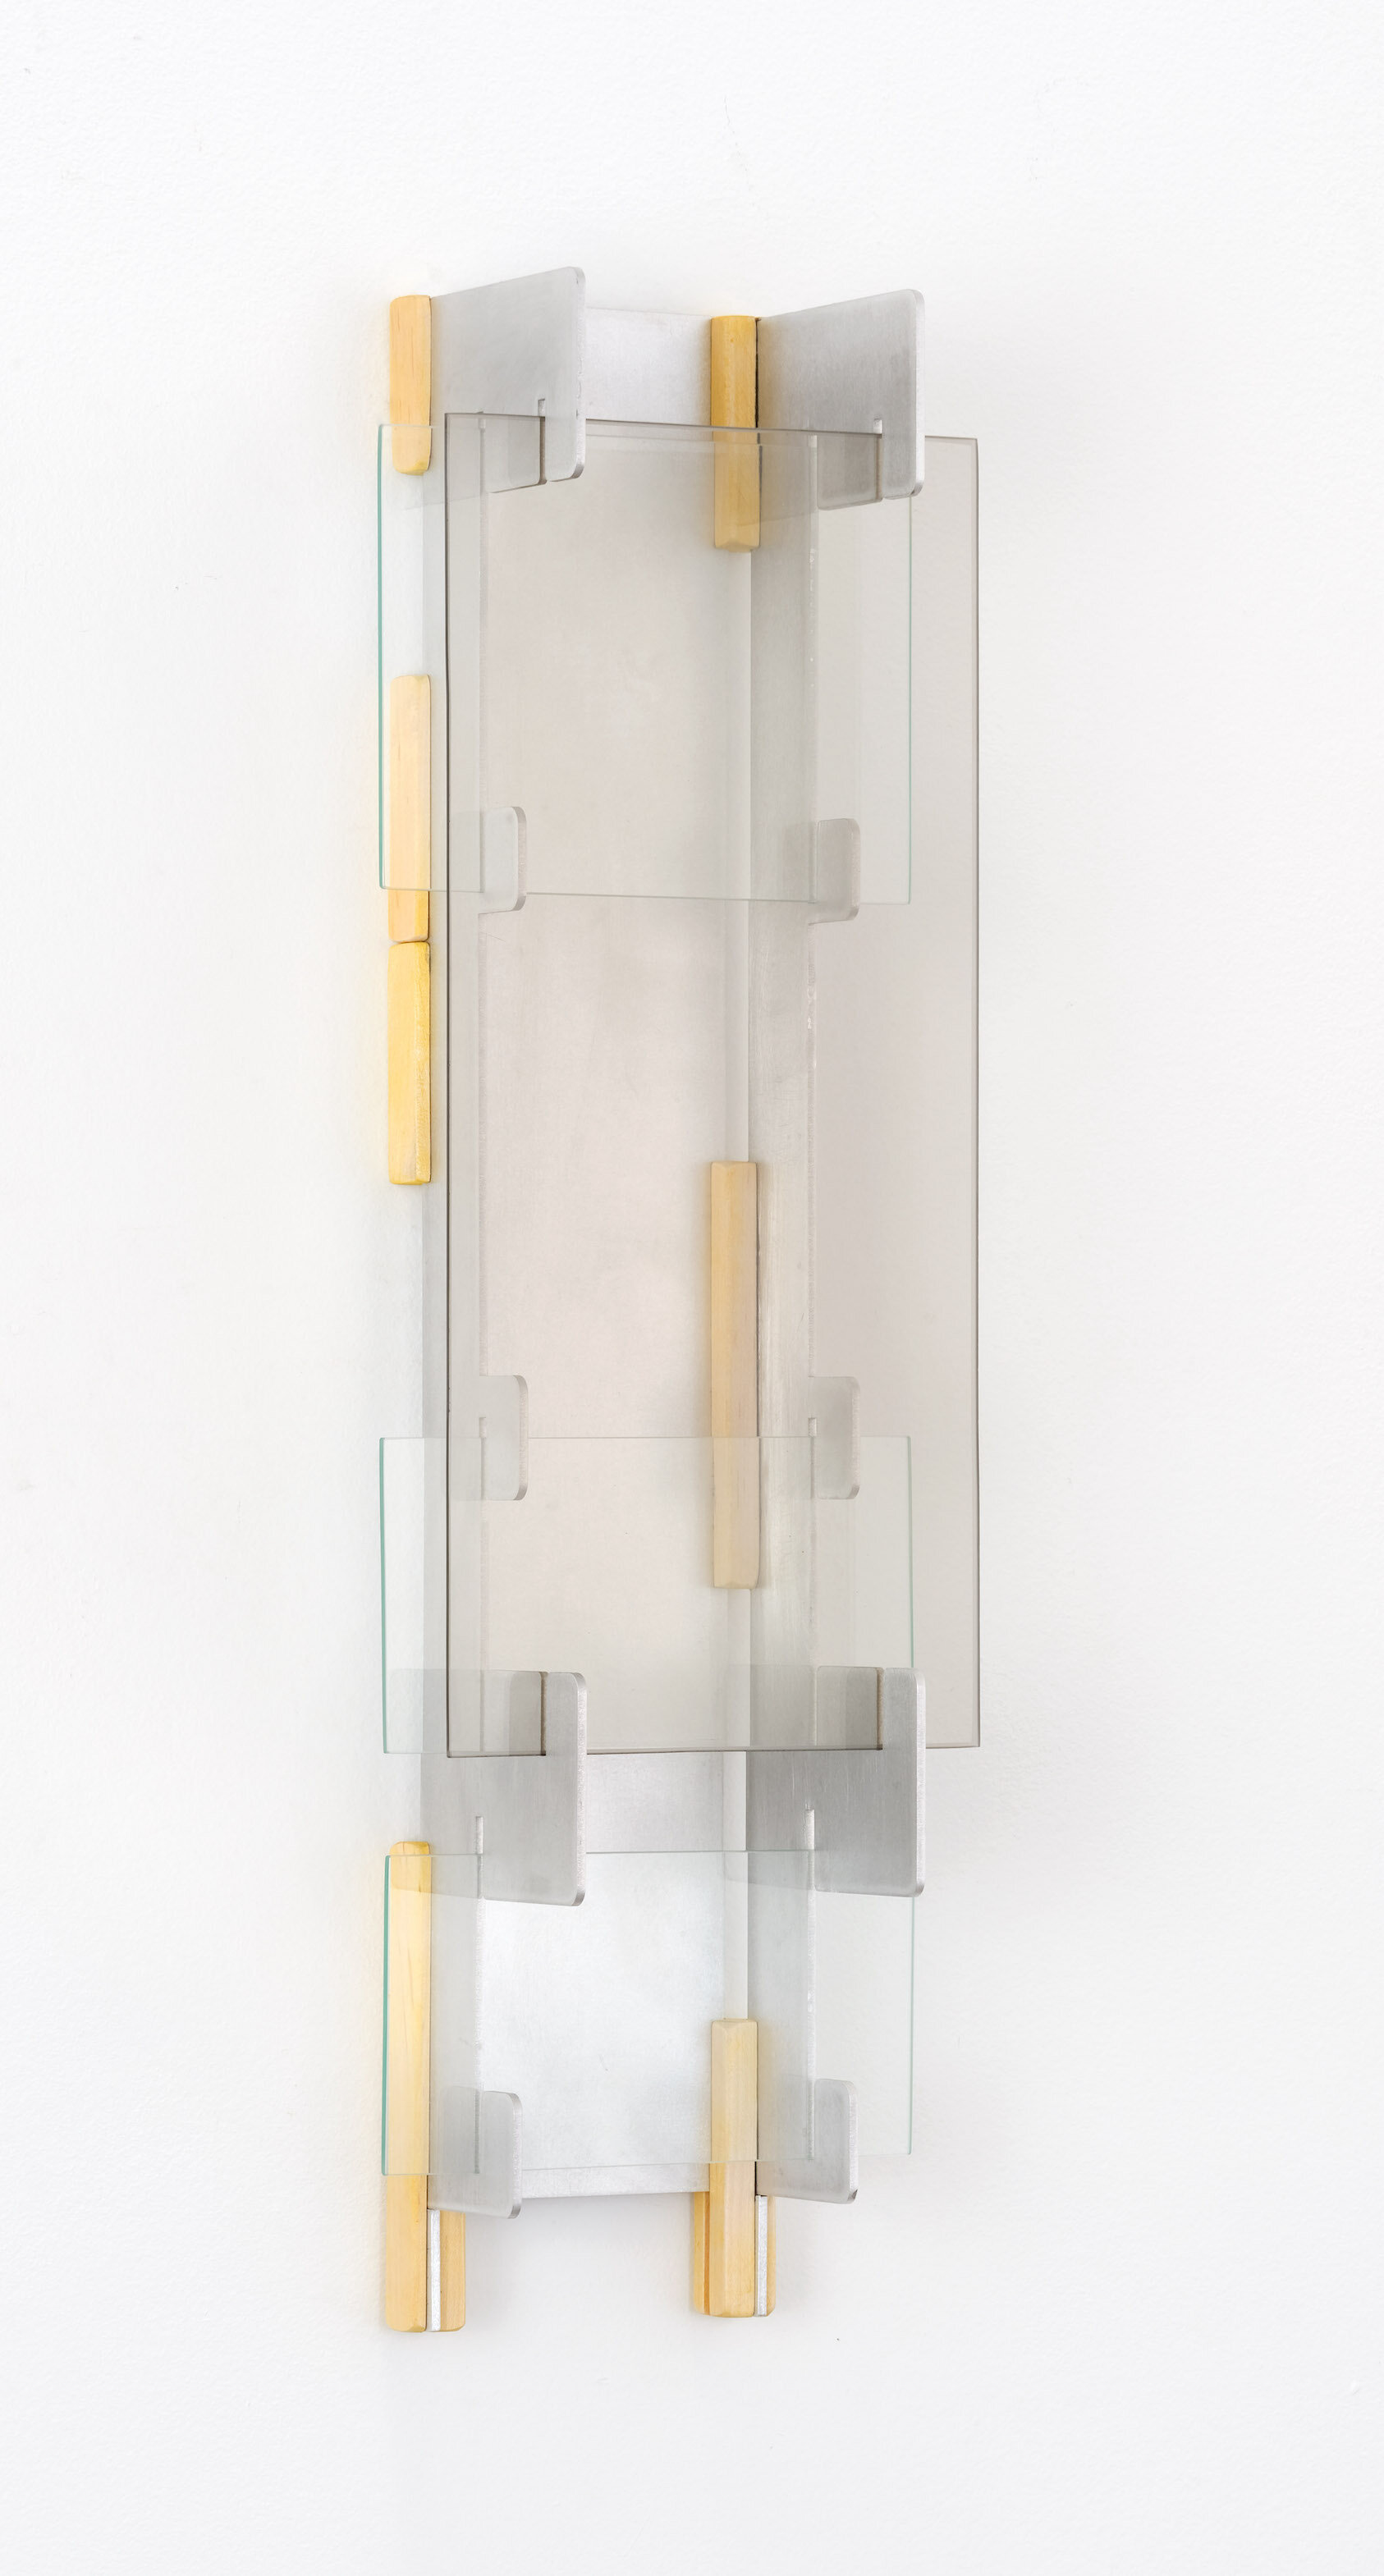  Elizabeth Orr,  Reliable,  2020, 25" H x 7" W x 5" D, Aluminum, tumeric, wood, bronze glass 